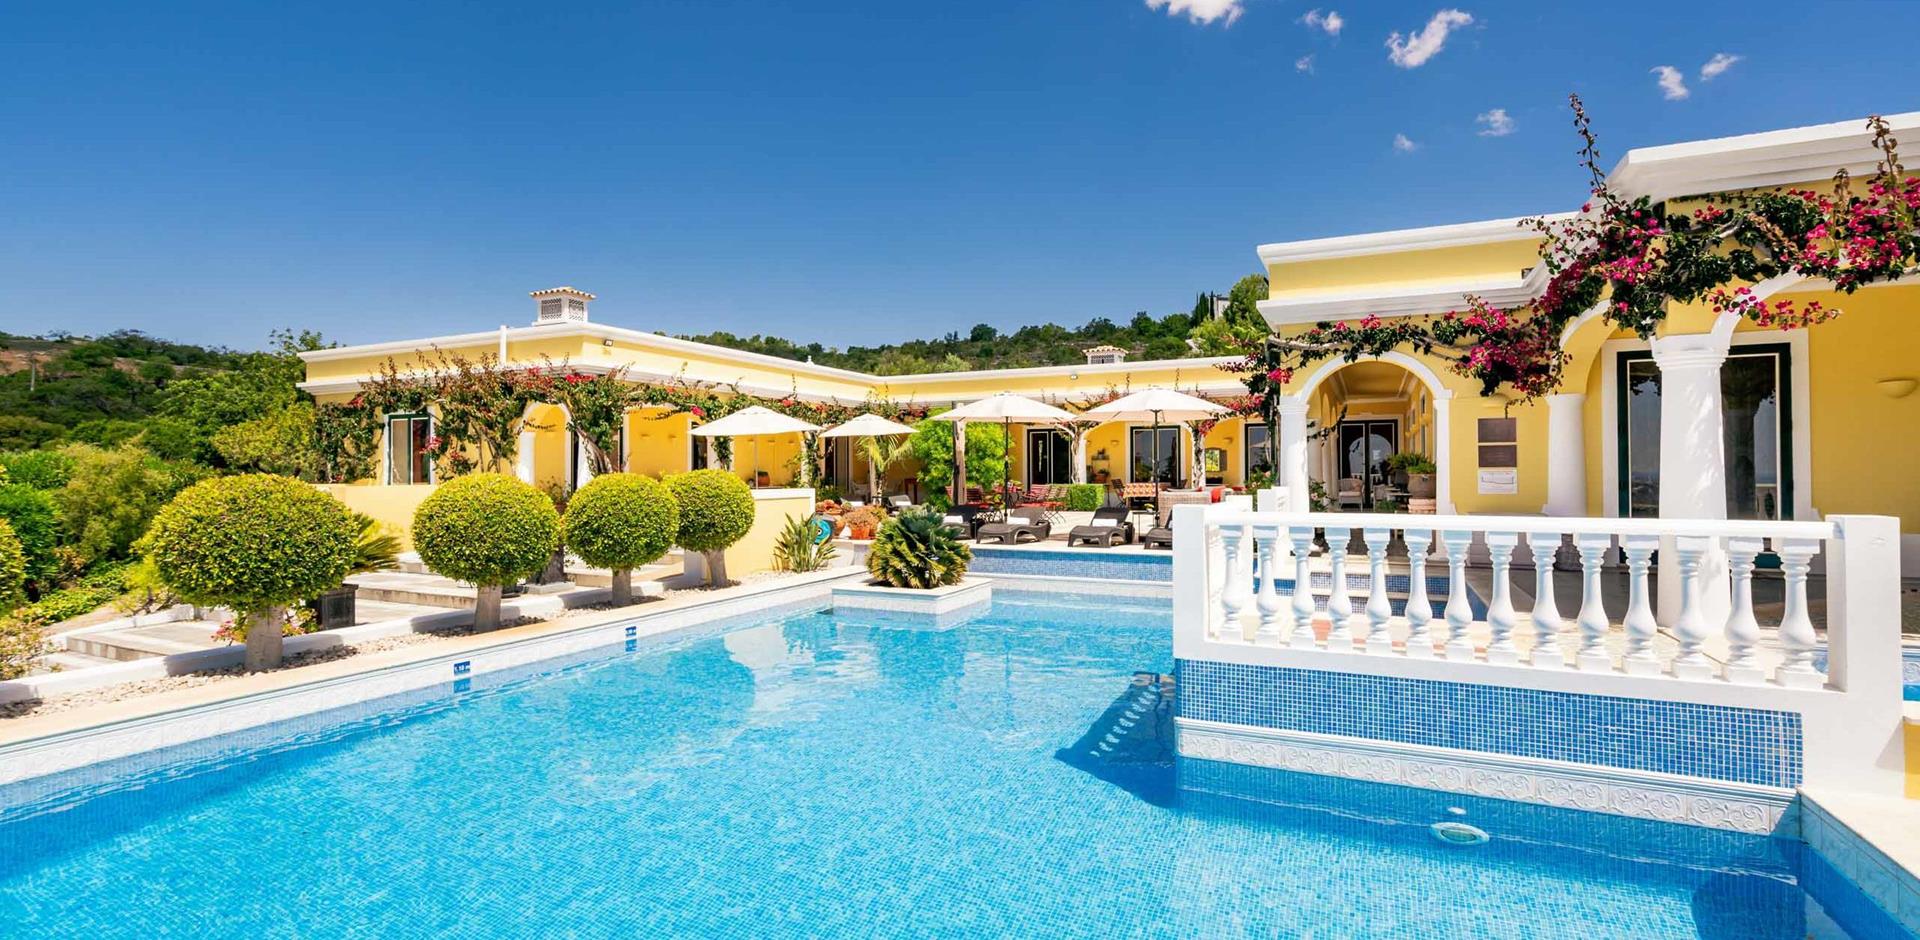 Pool, Villa Azulejo, Algarve, Portugal